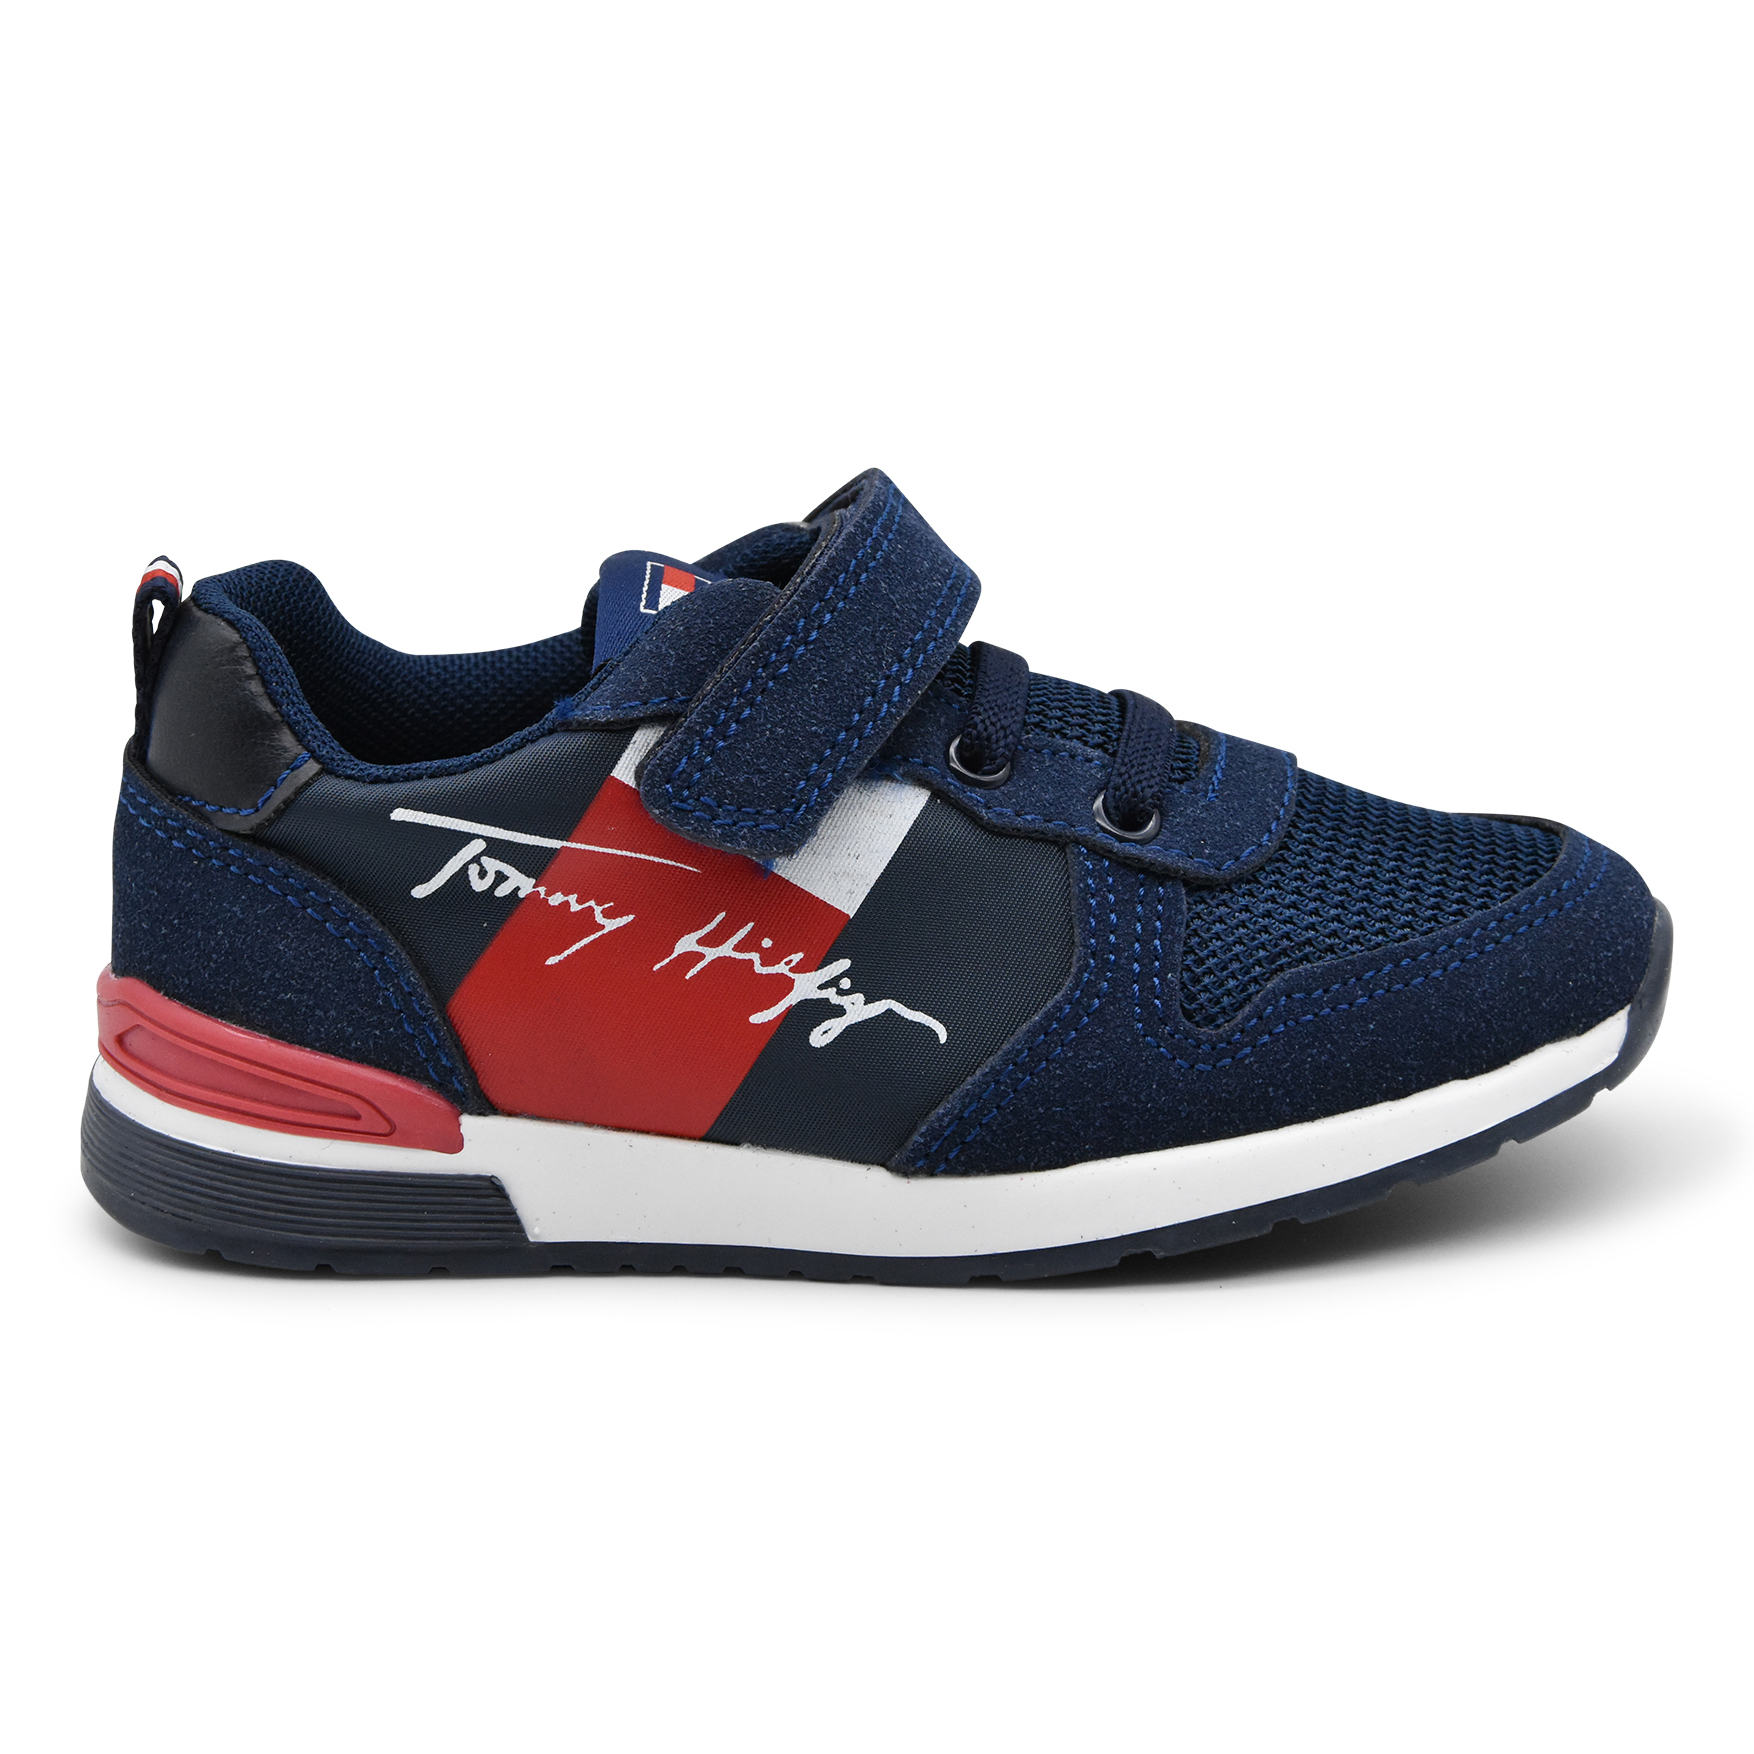 Tommy Hilfiger, sneakers, lacci elasticizzati, velcro, rosso, blu, profilo